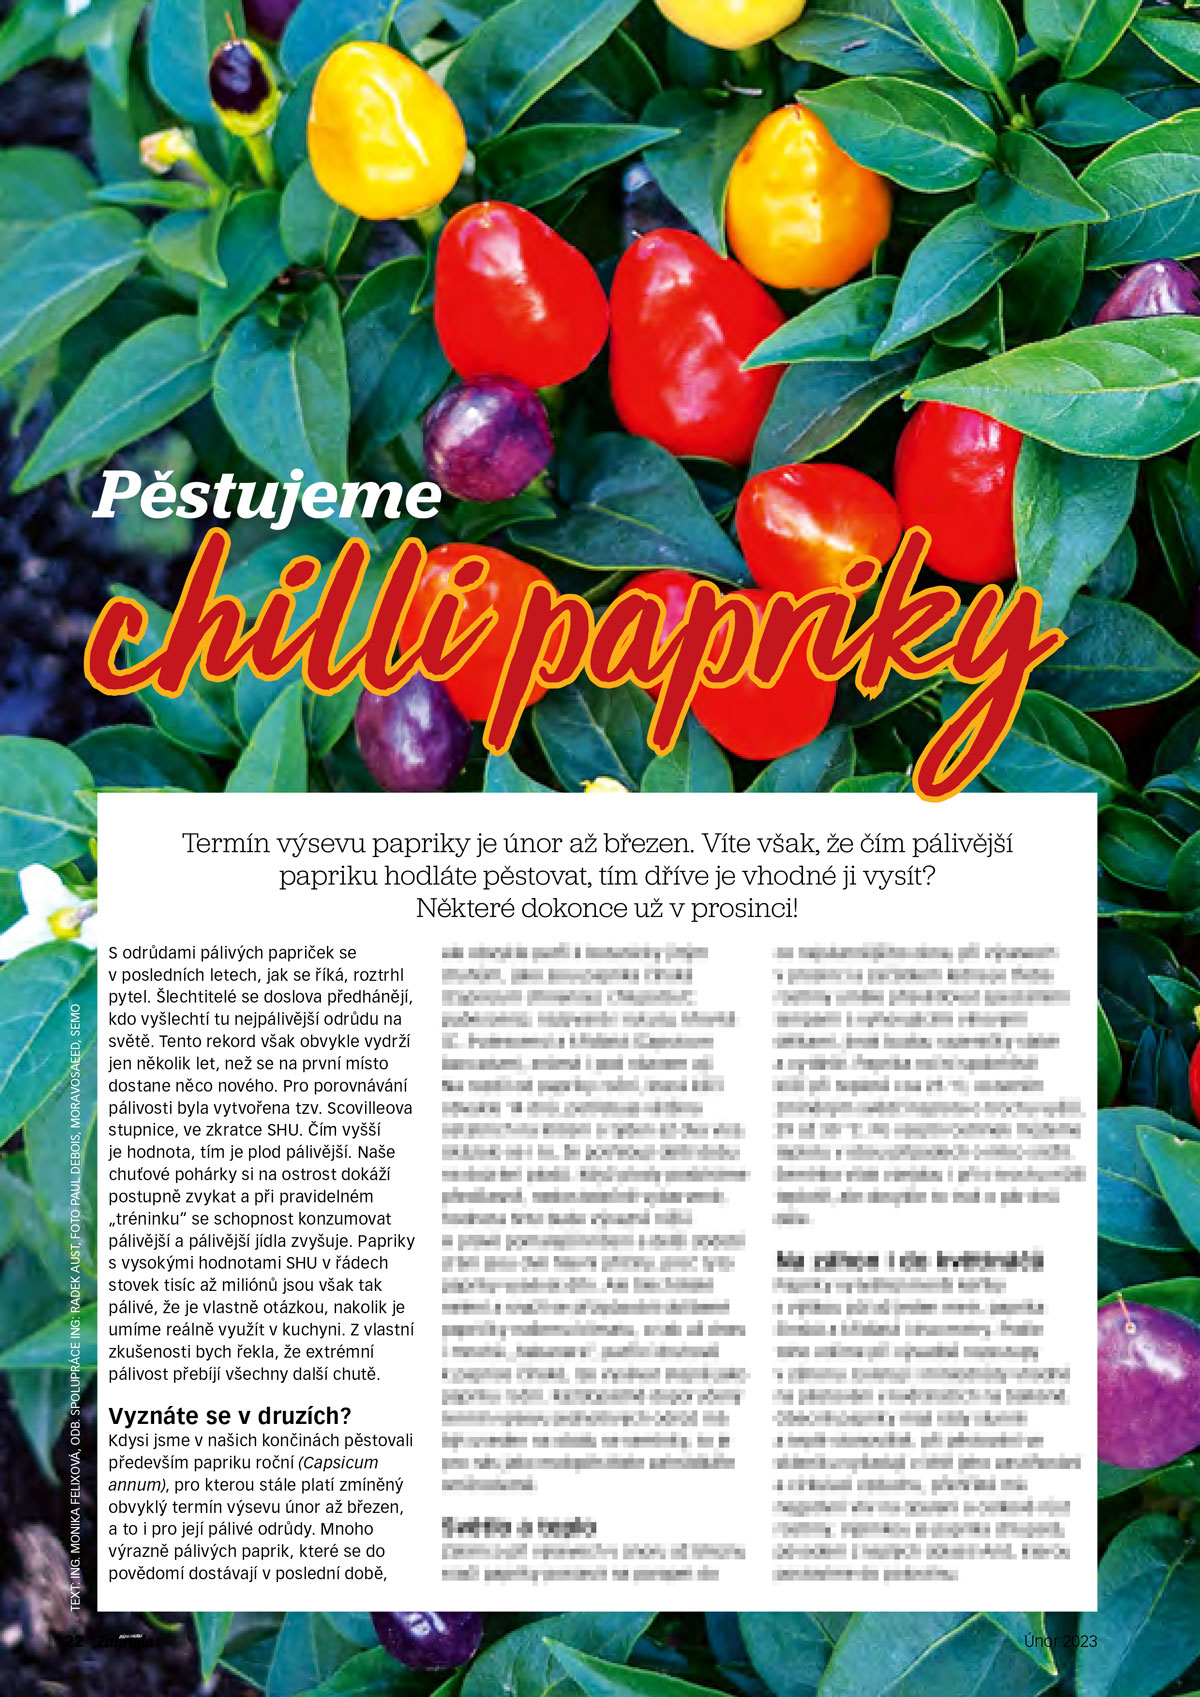 Náhled článku o pěstování chilli papriček